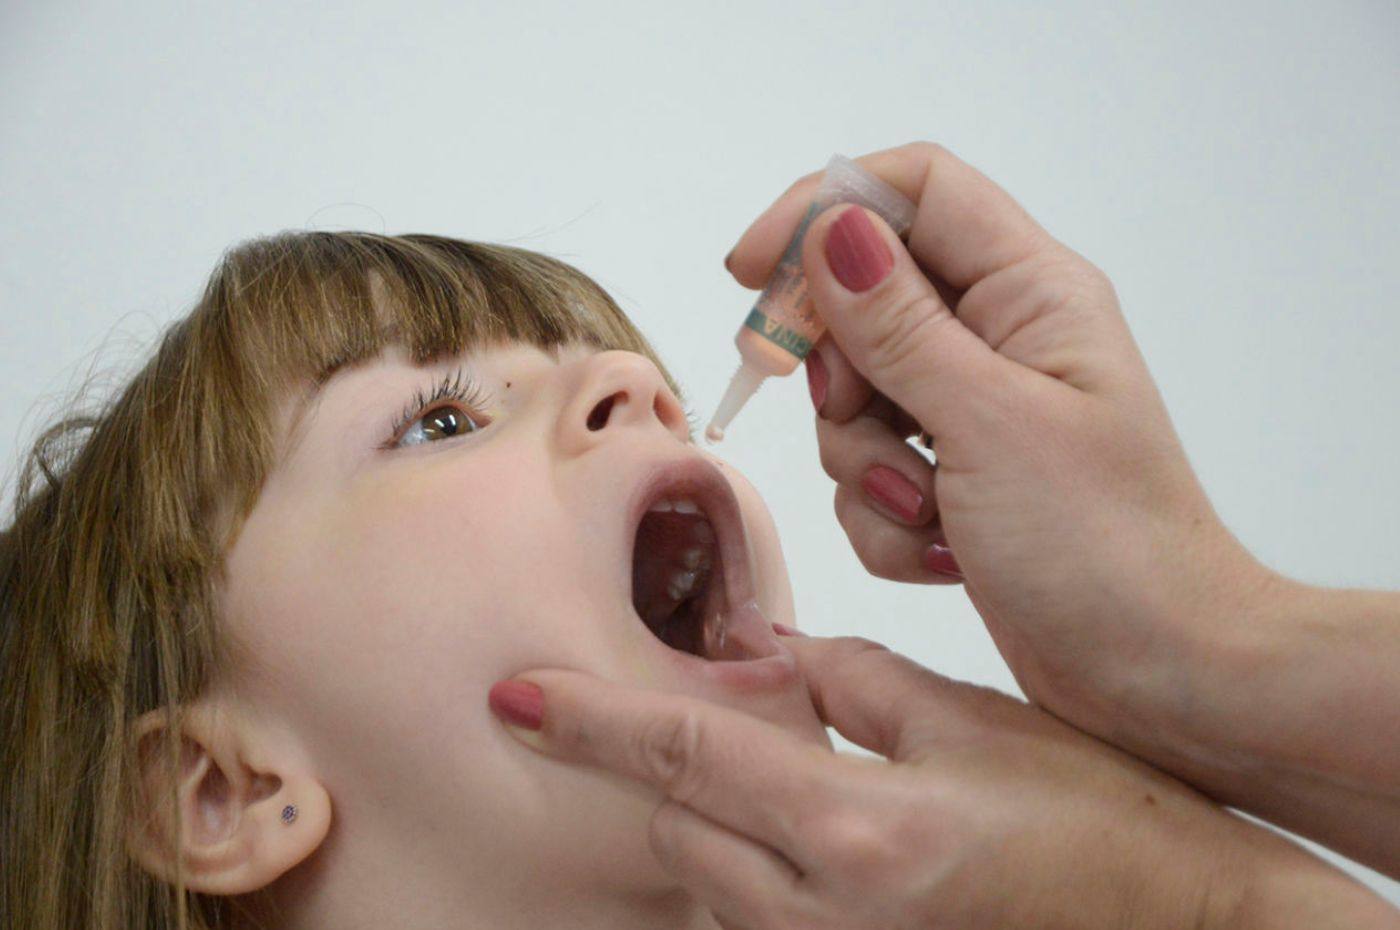 Criança recebendo vacina de gotinha